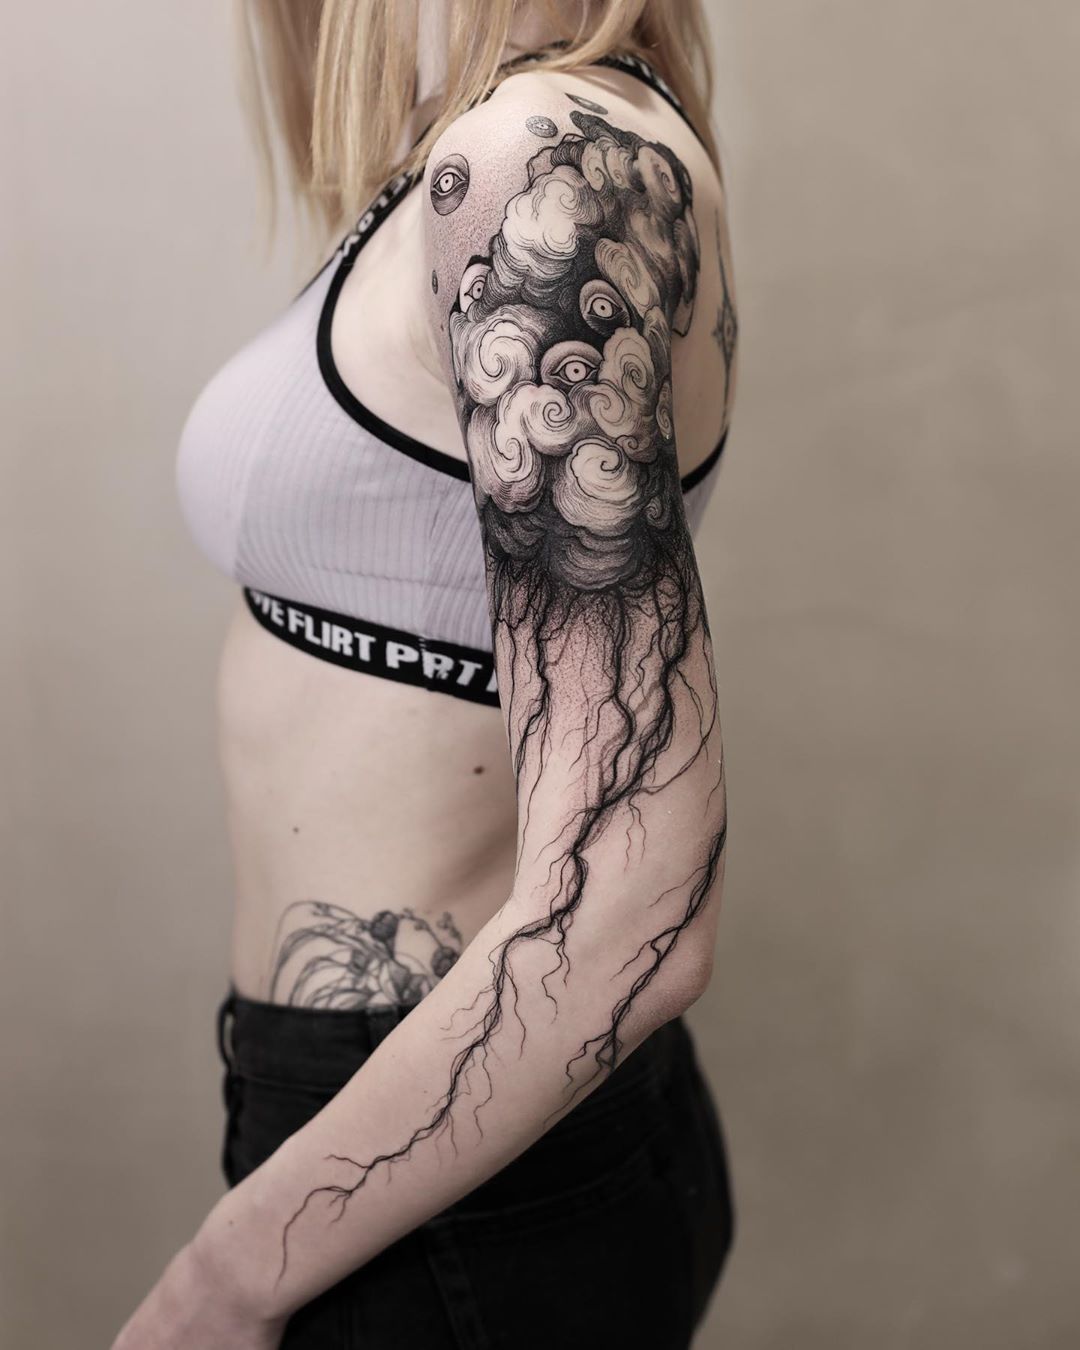 Cloud tattoo : r/TattooDesigns